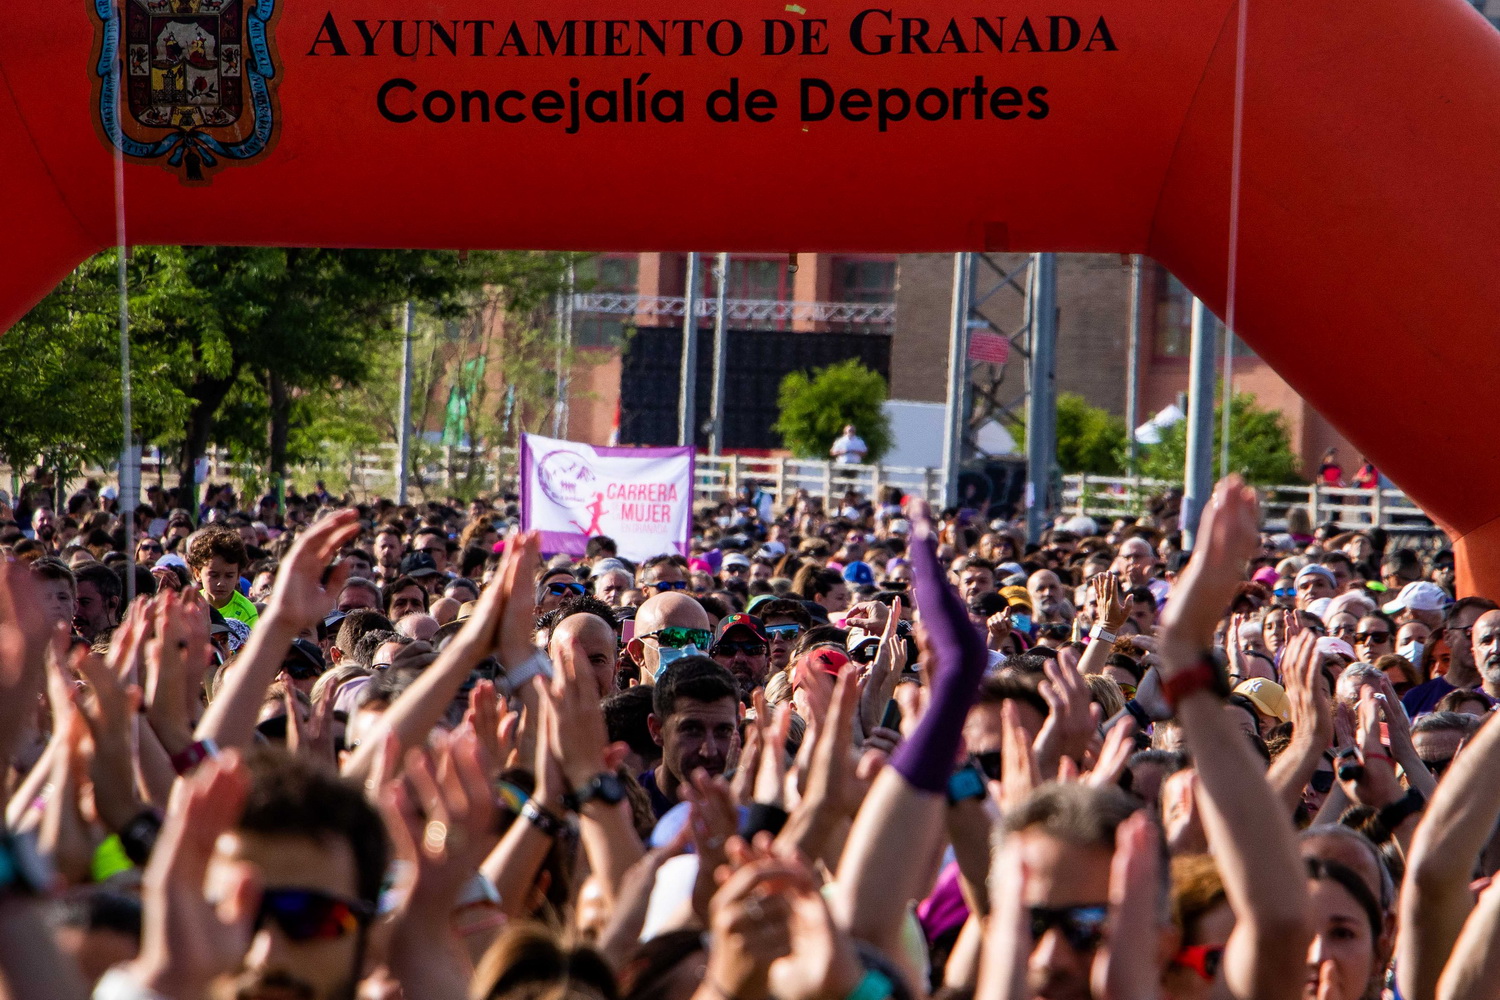 La Carrera de la Mujer contra el cáncer reúne a 8.000 personas en Granada por la prevención y la vida saludable   